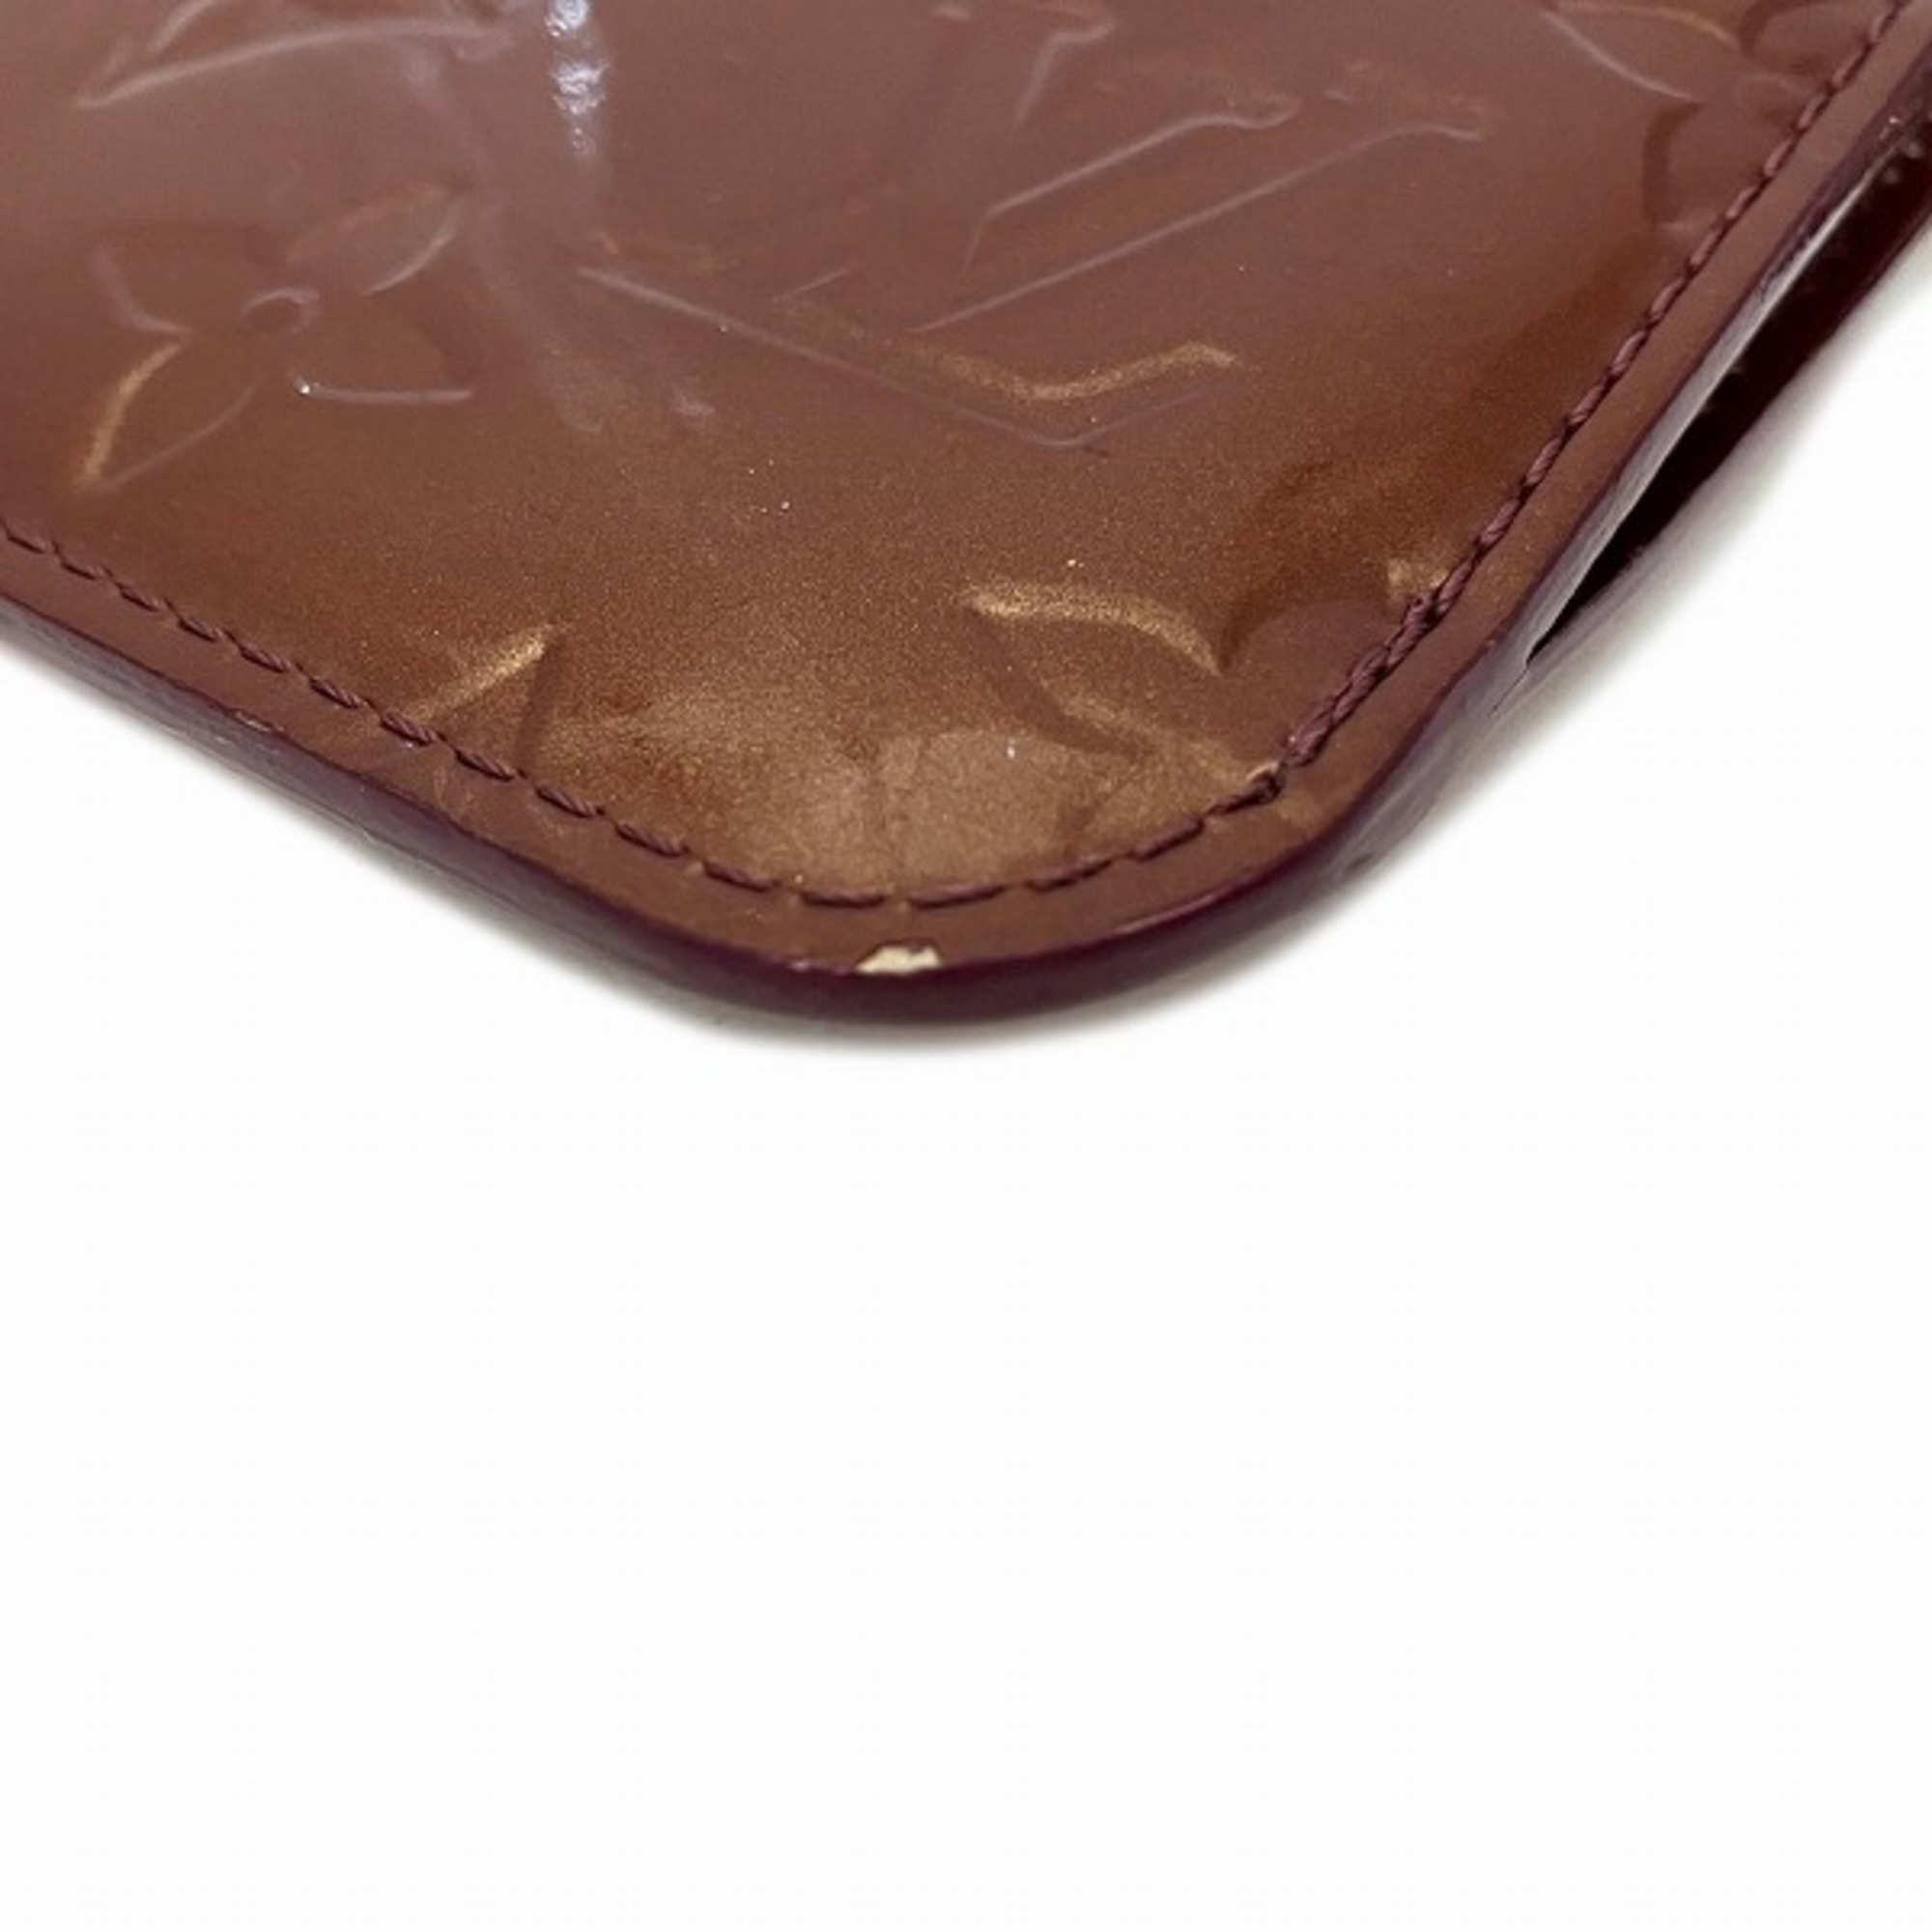 Louis Vuitton Vernis Pochette Clere NM M93557 Coin Case Men's Women's Wallet